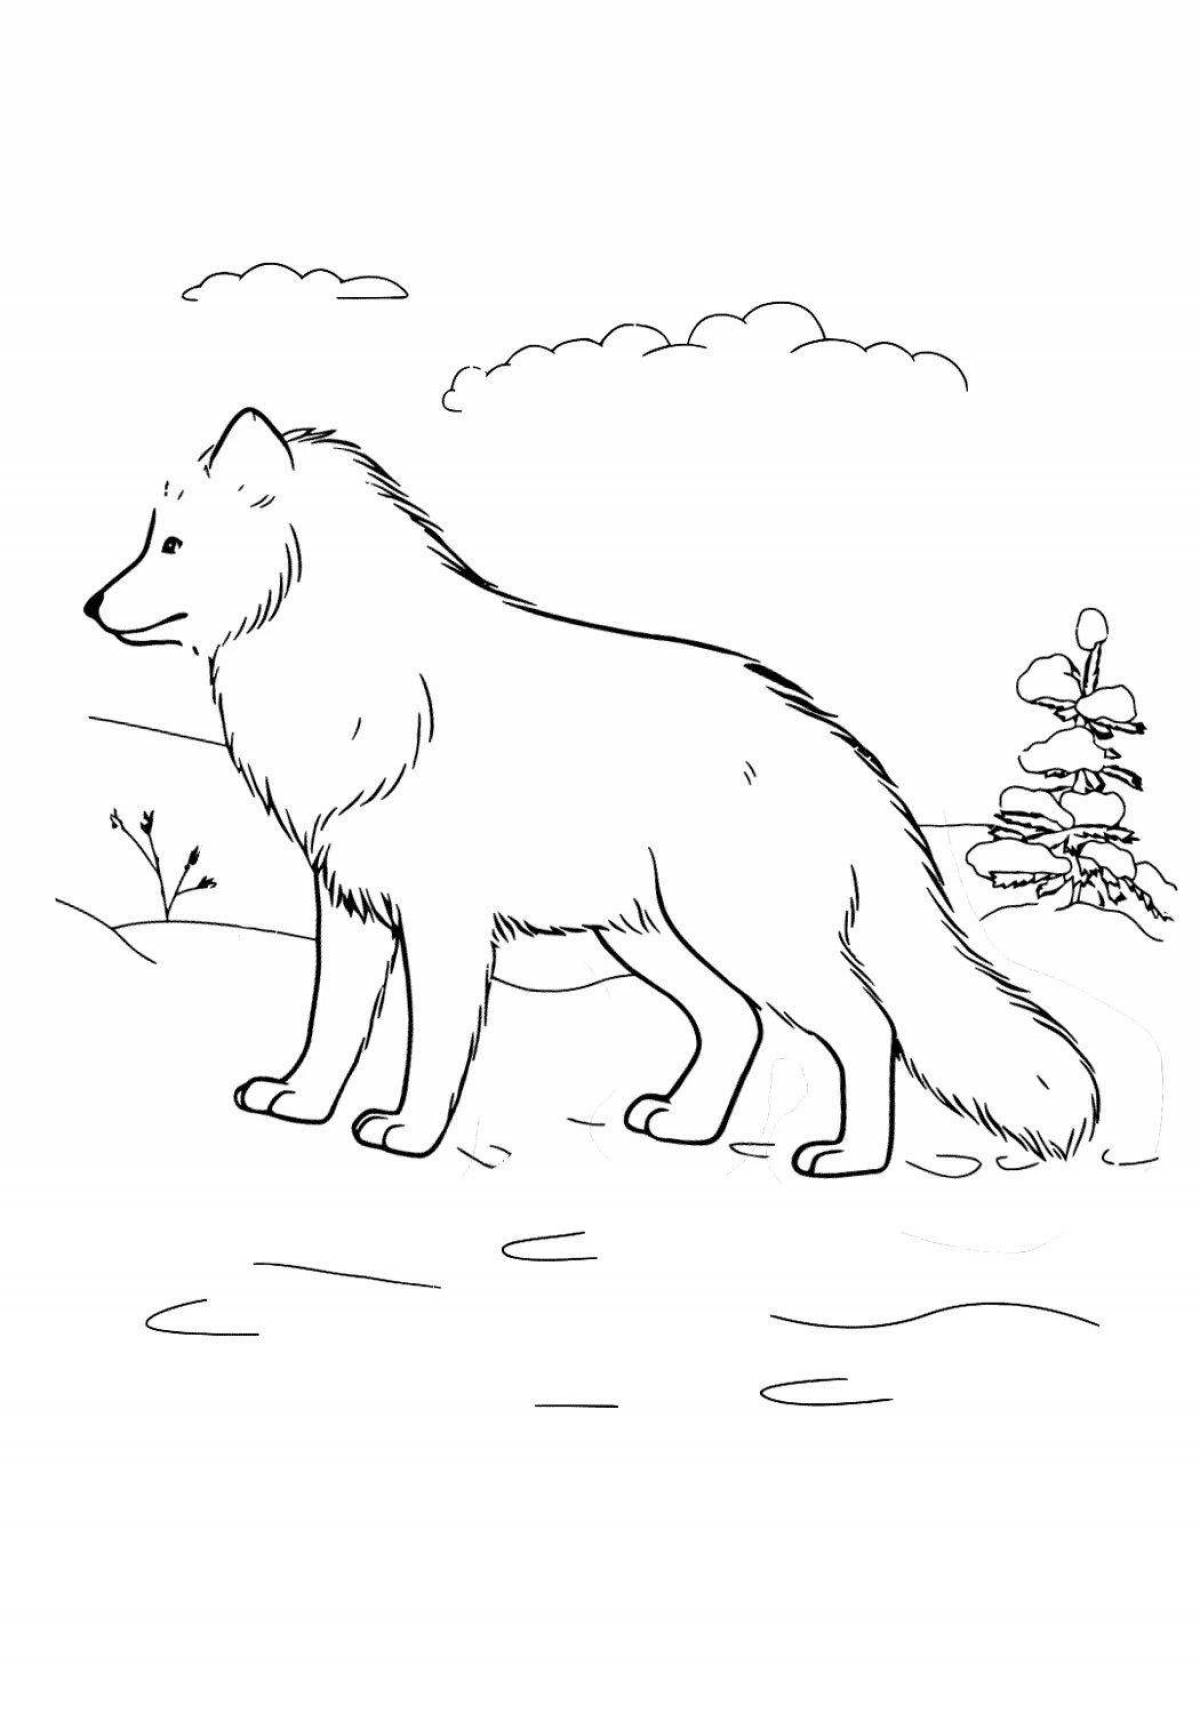 Изысканная раскраска полярного волка для детей